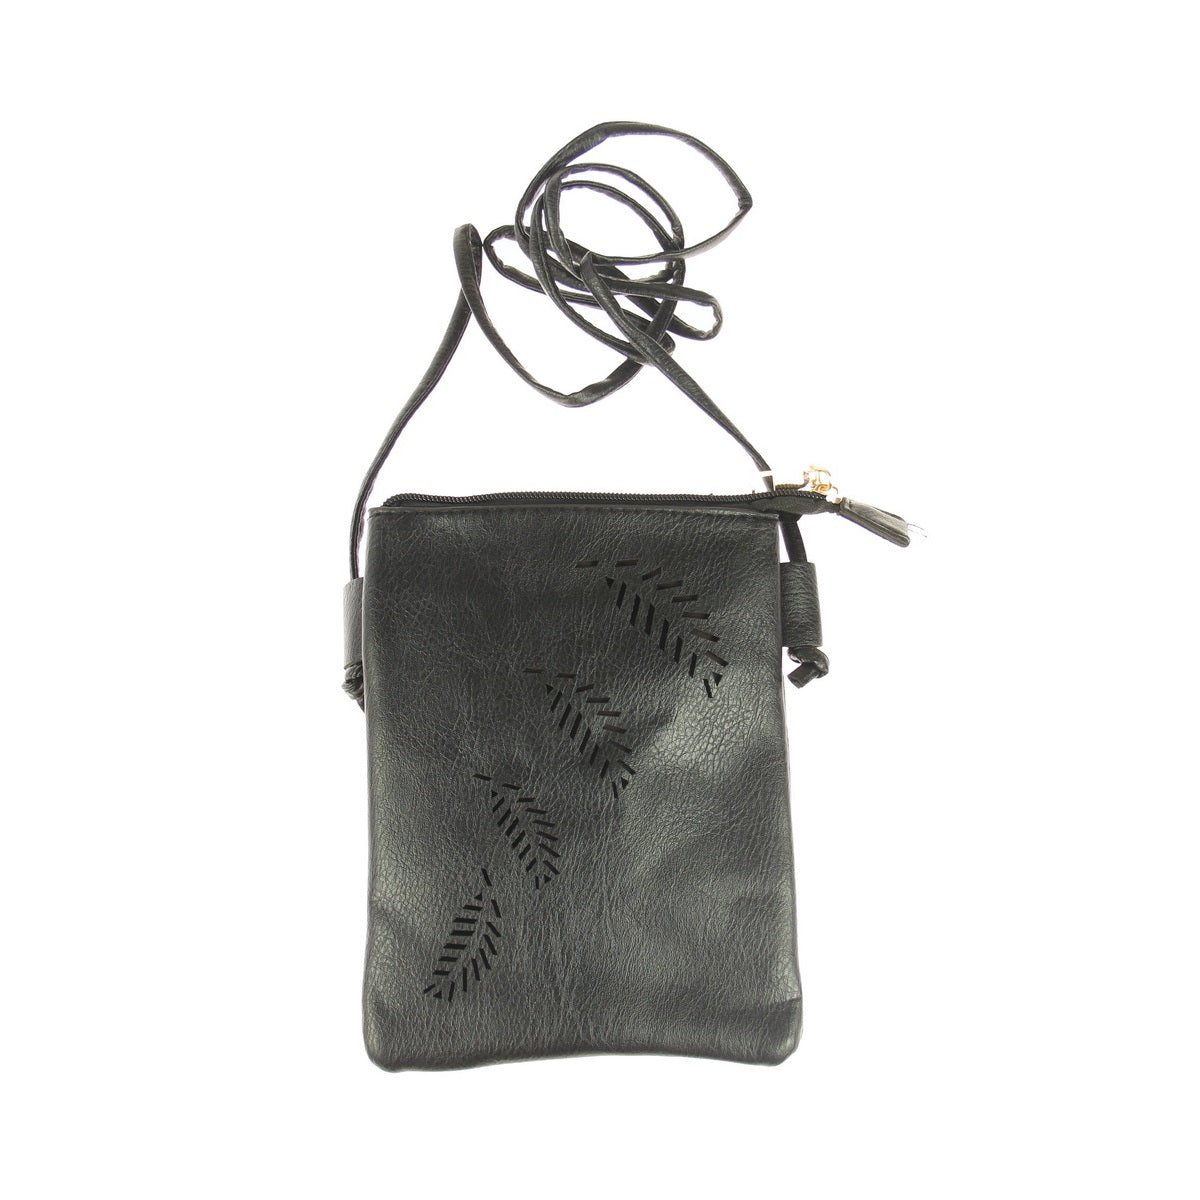 Fern Cutout Phone Bag